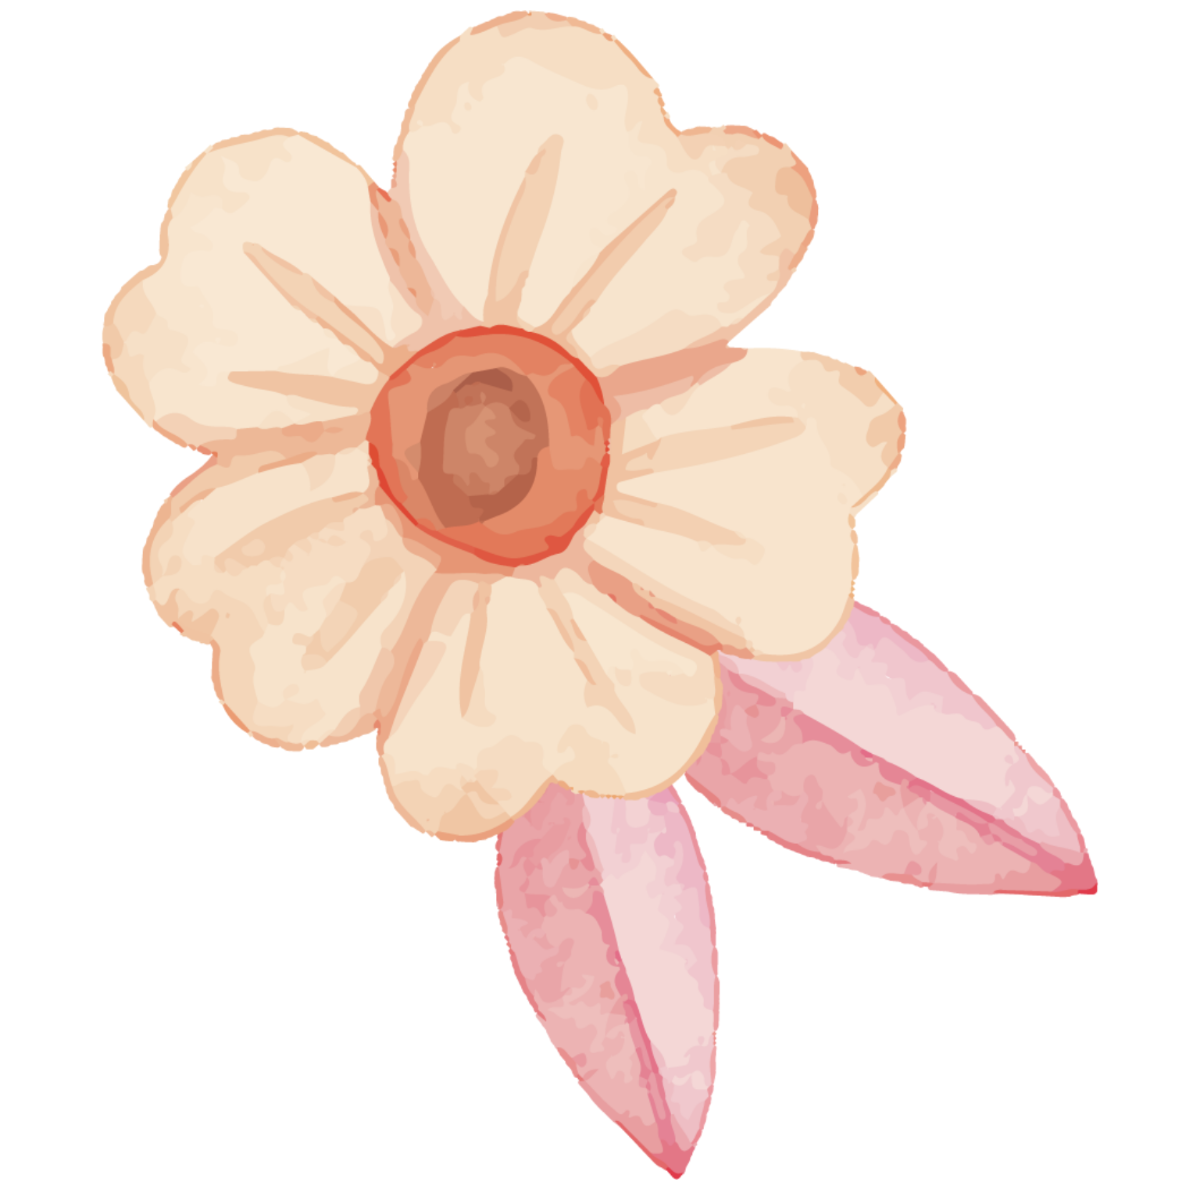 Minimalist Watercolor Flower